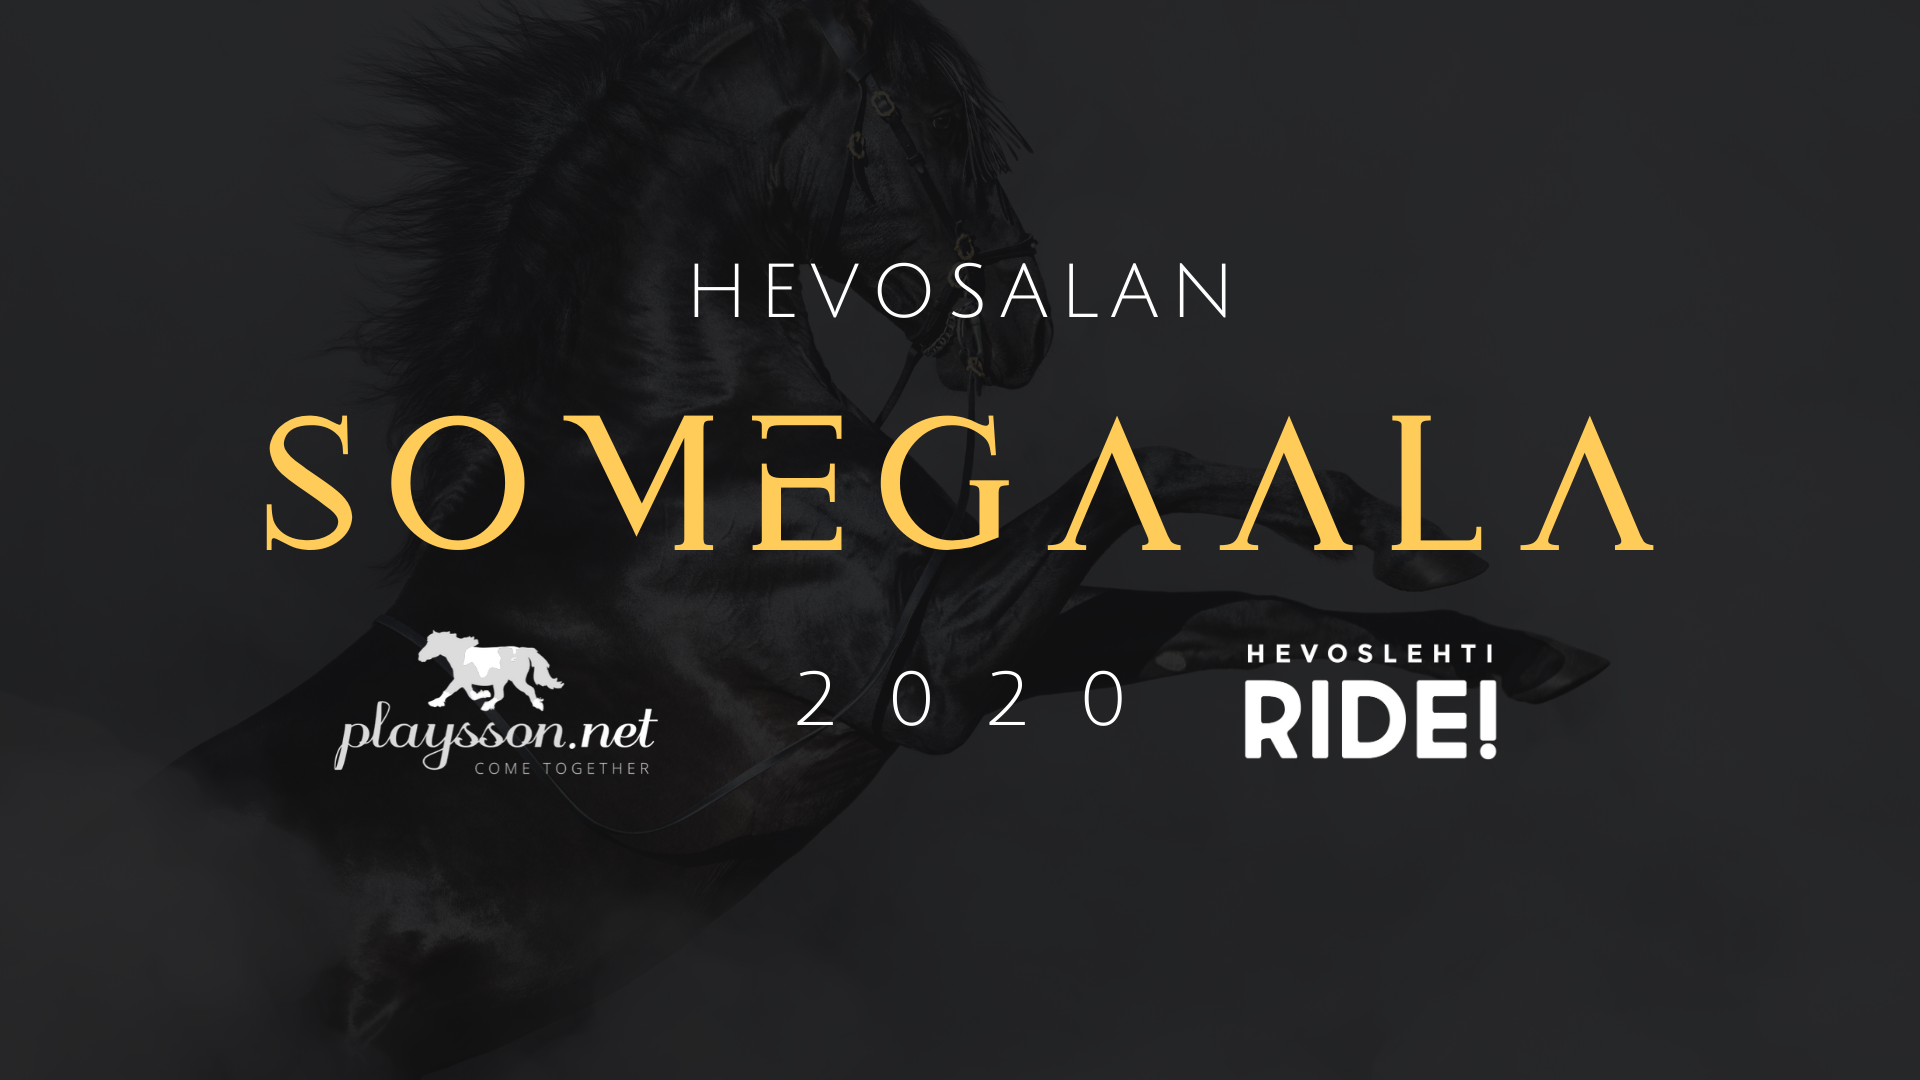 Hevosalan SomeGaala 2020 – Äänestä suosikkiasi!